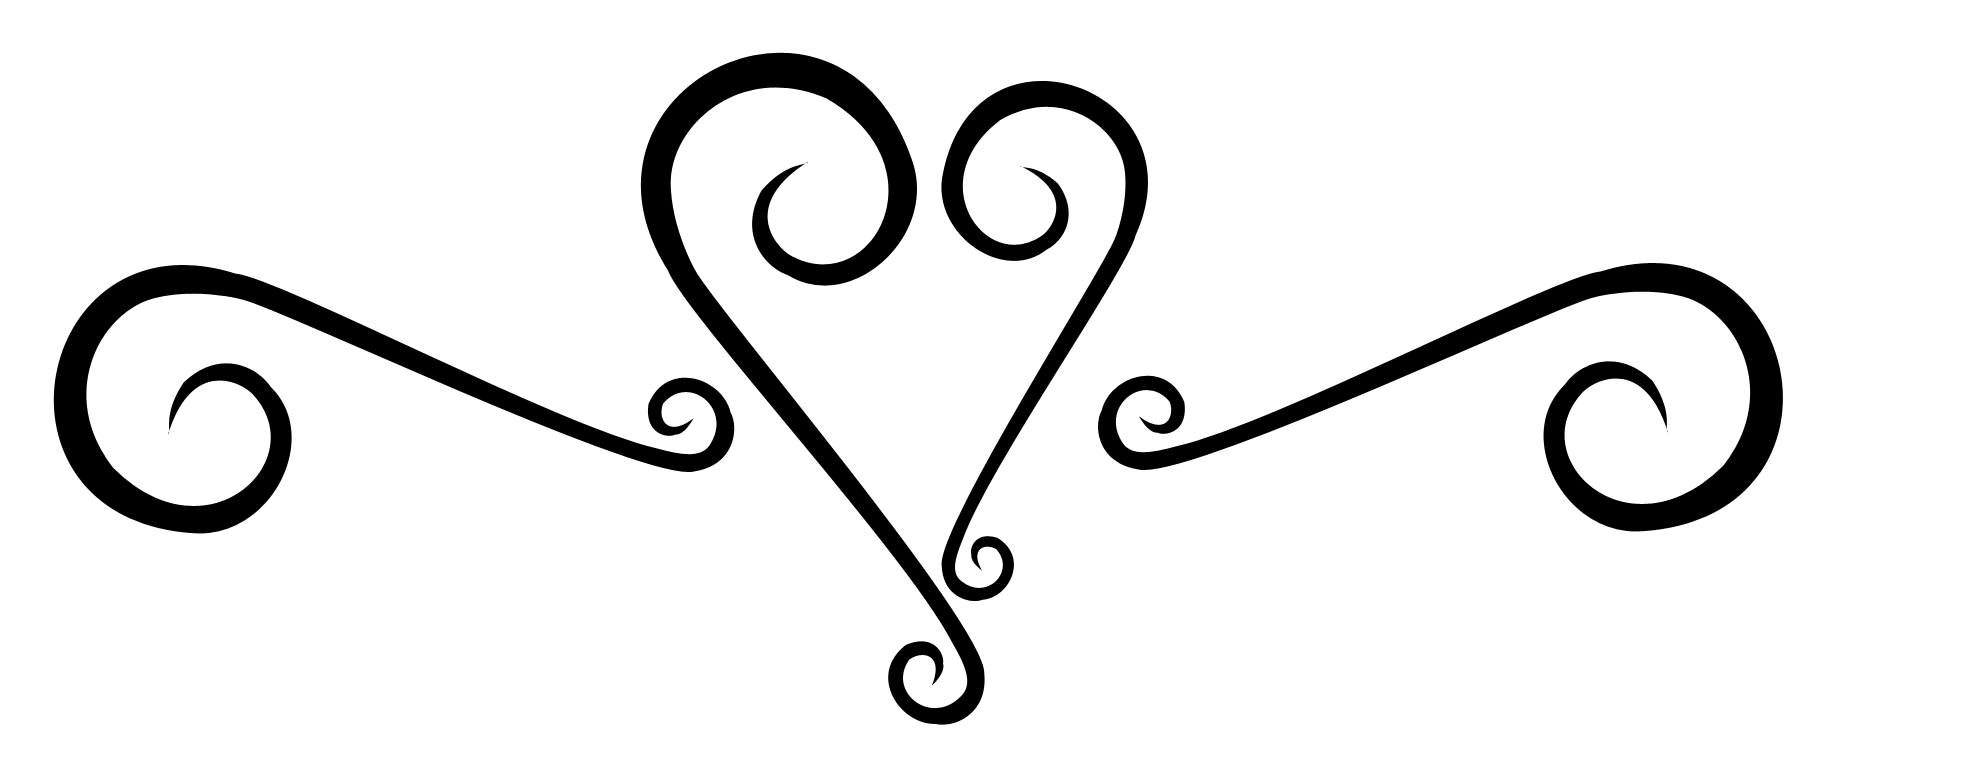 Swirly Heart Tattoo   Cliparts Co